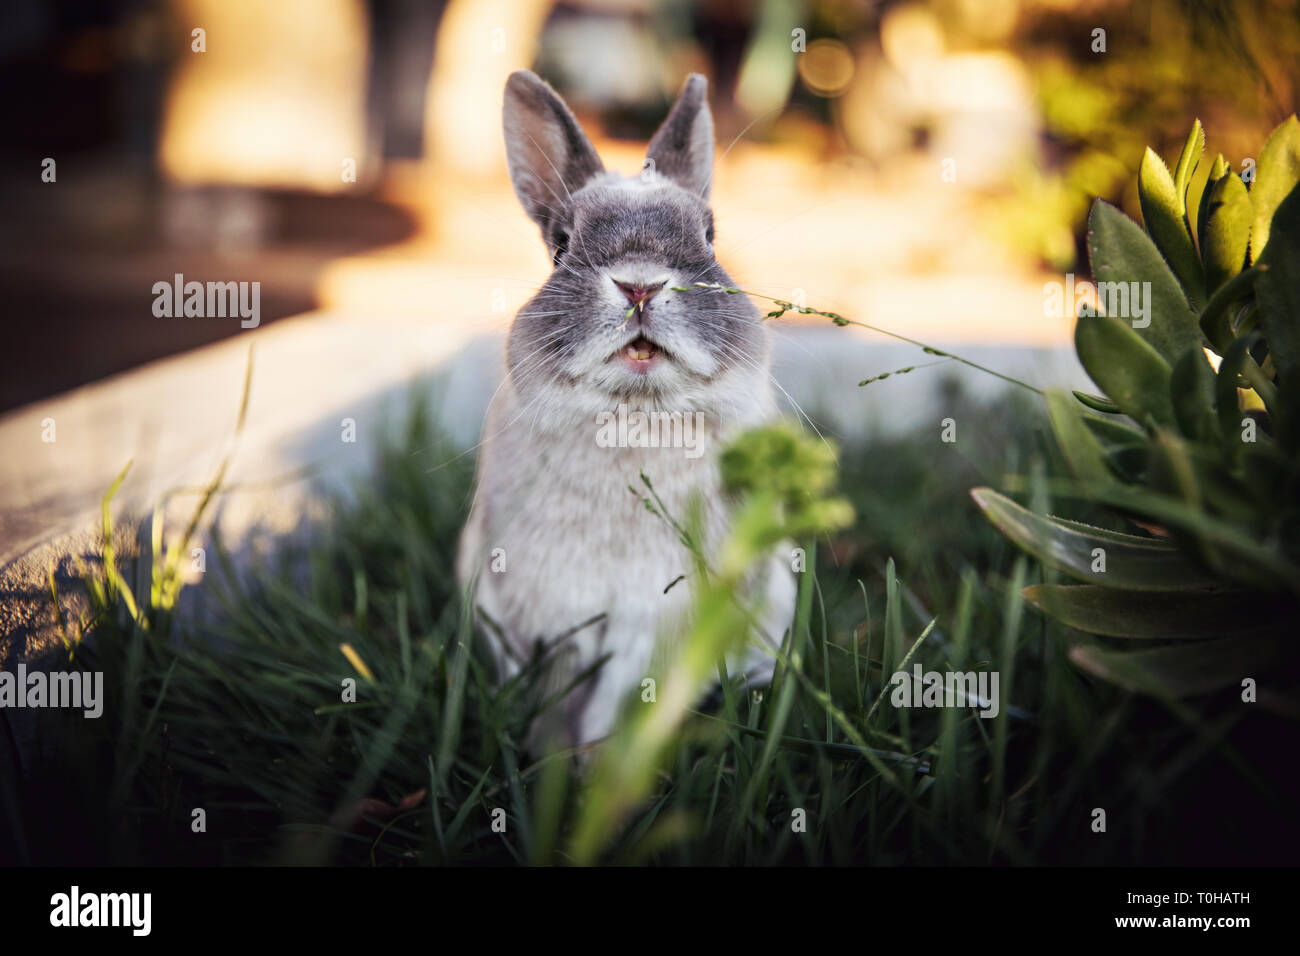 Un expresivo retrato de un conejo enano con su boca agape en una zona al aire libre de hierba. Foto de stock